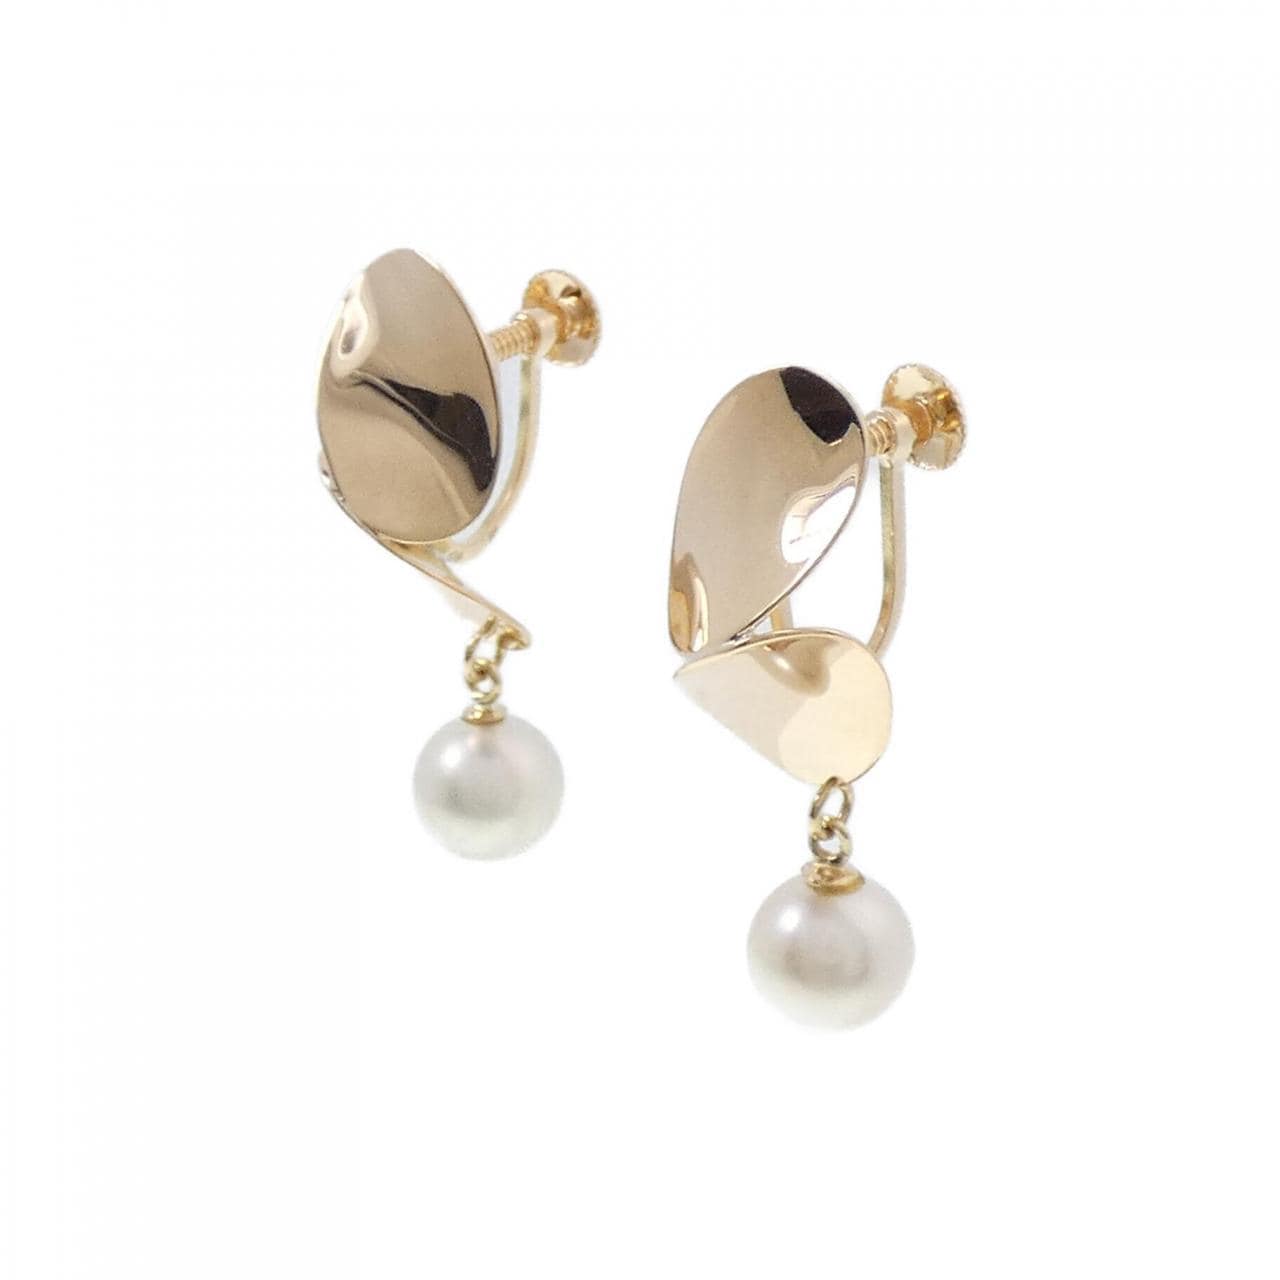 K18YG Akoya pearl earrings 7mm